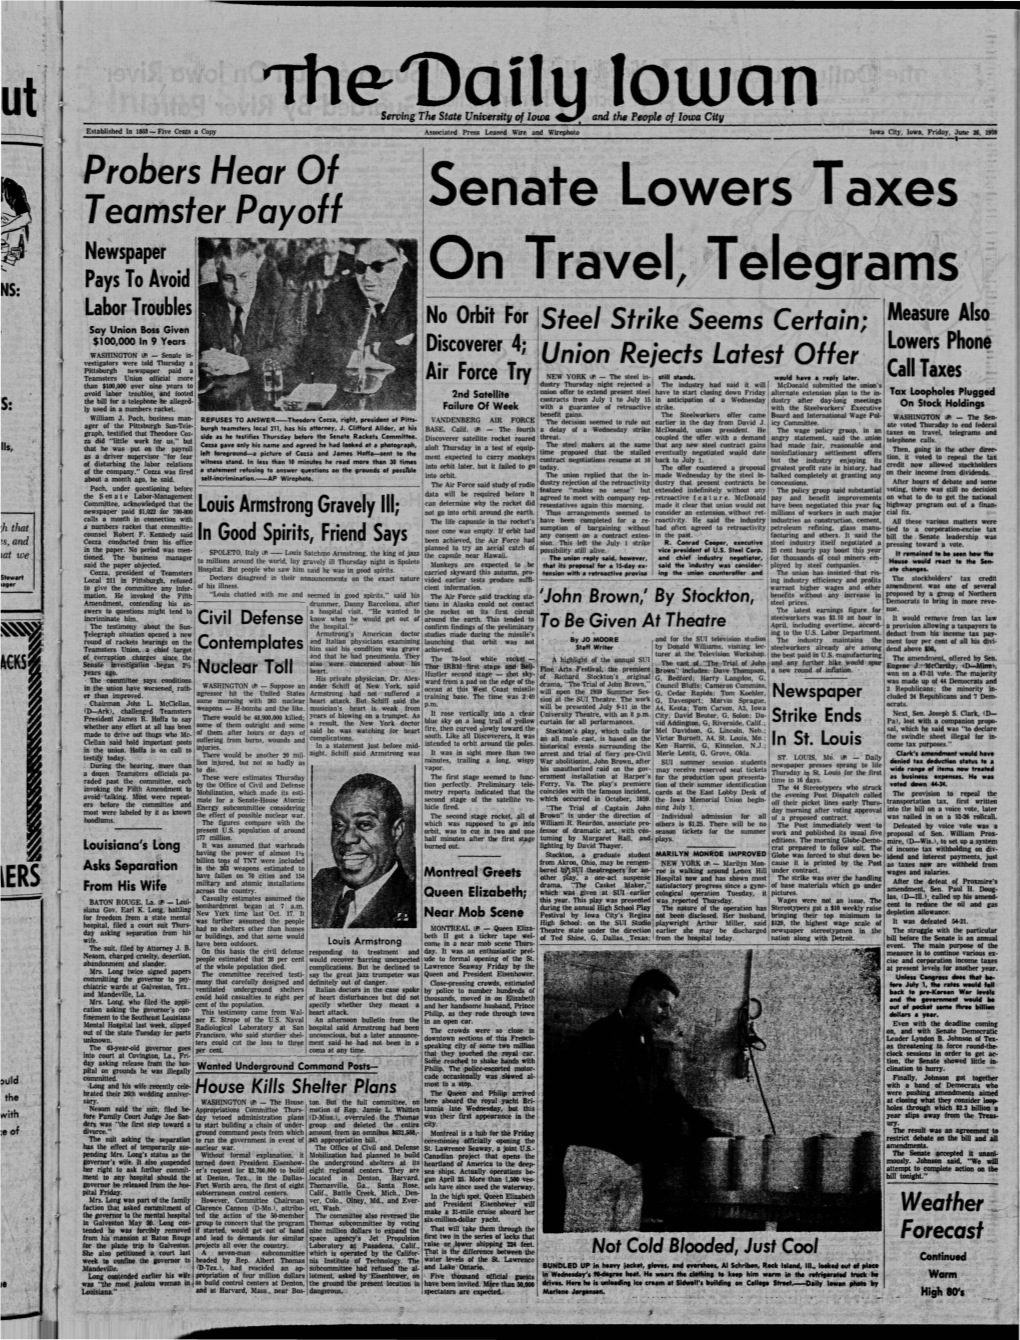 Daily Iowan (Iowa City, Iowa), 1959-06-26